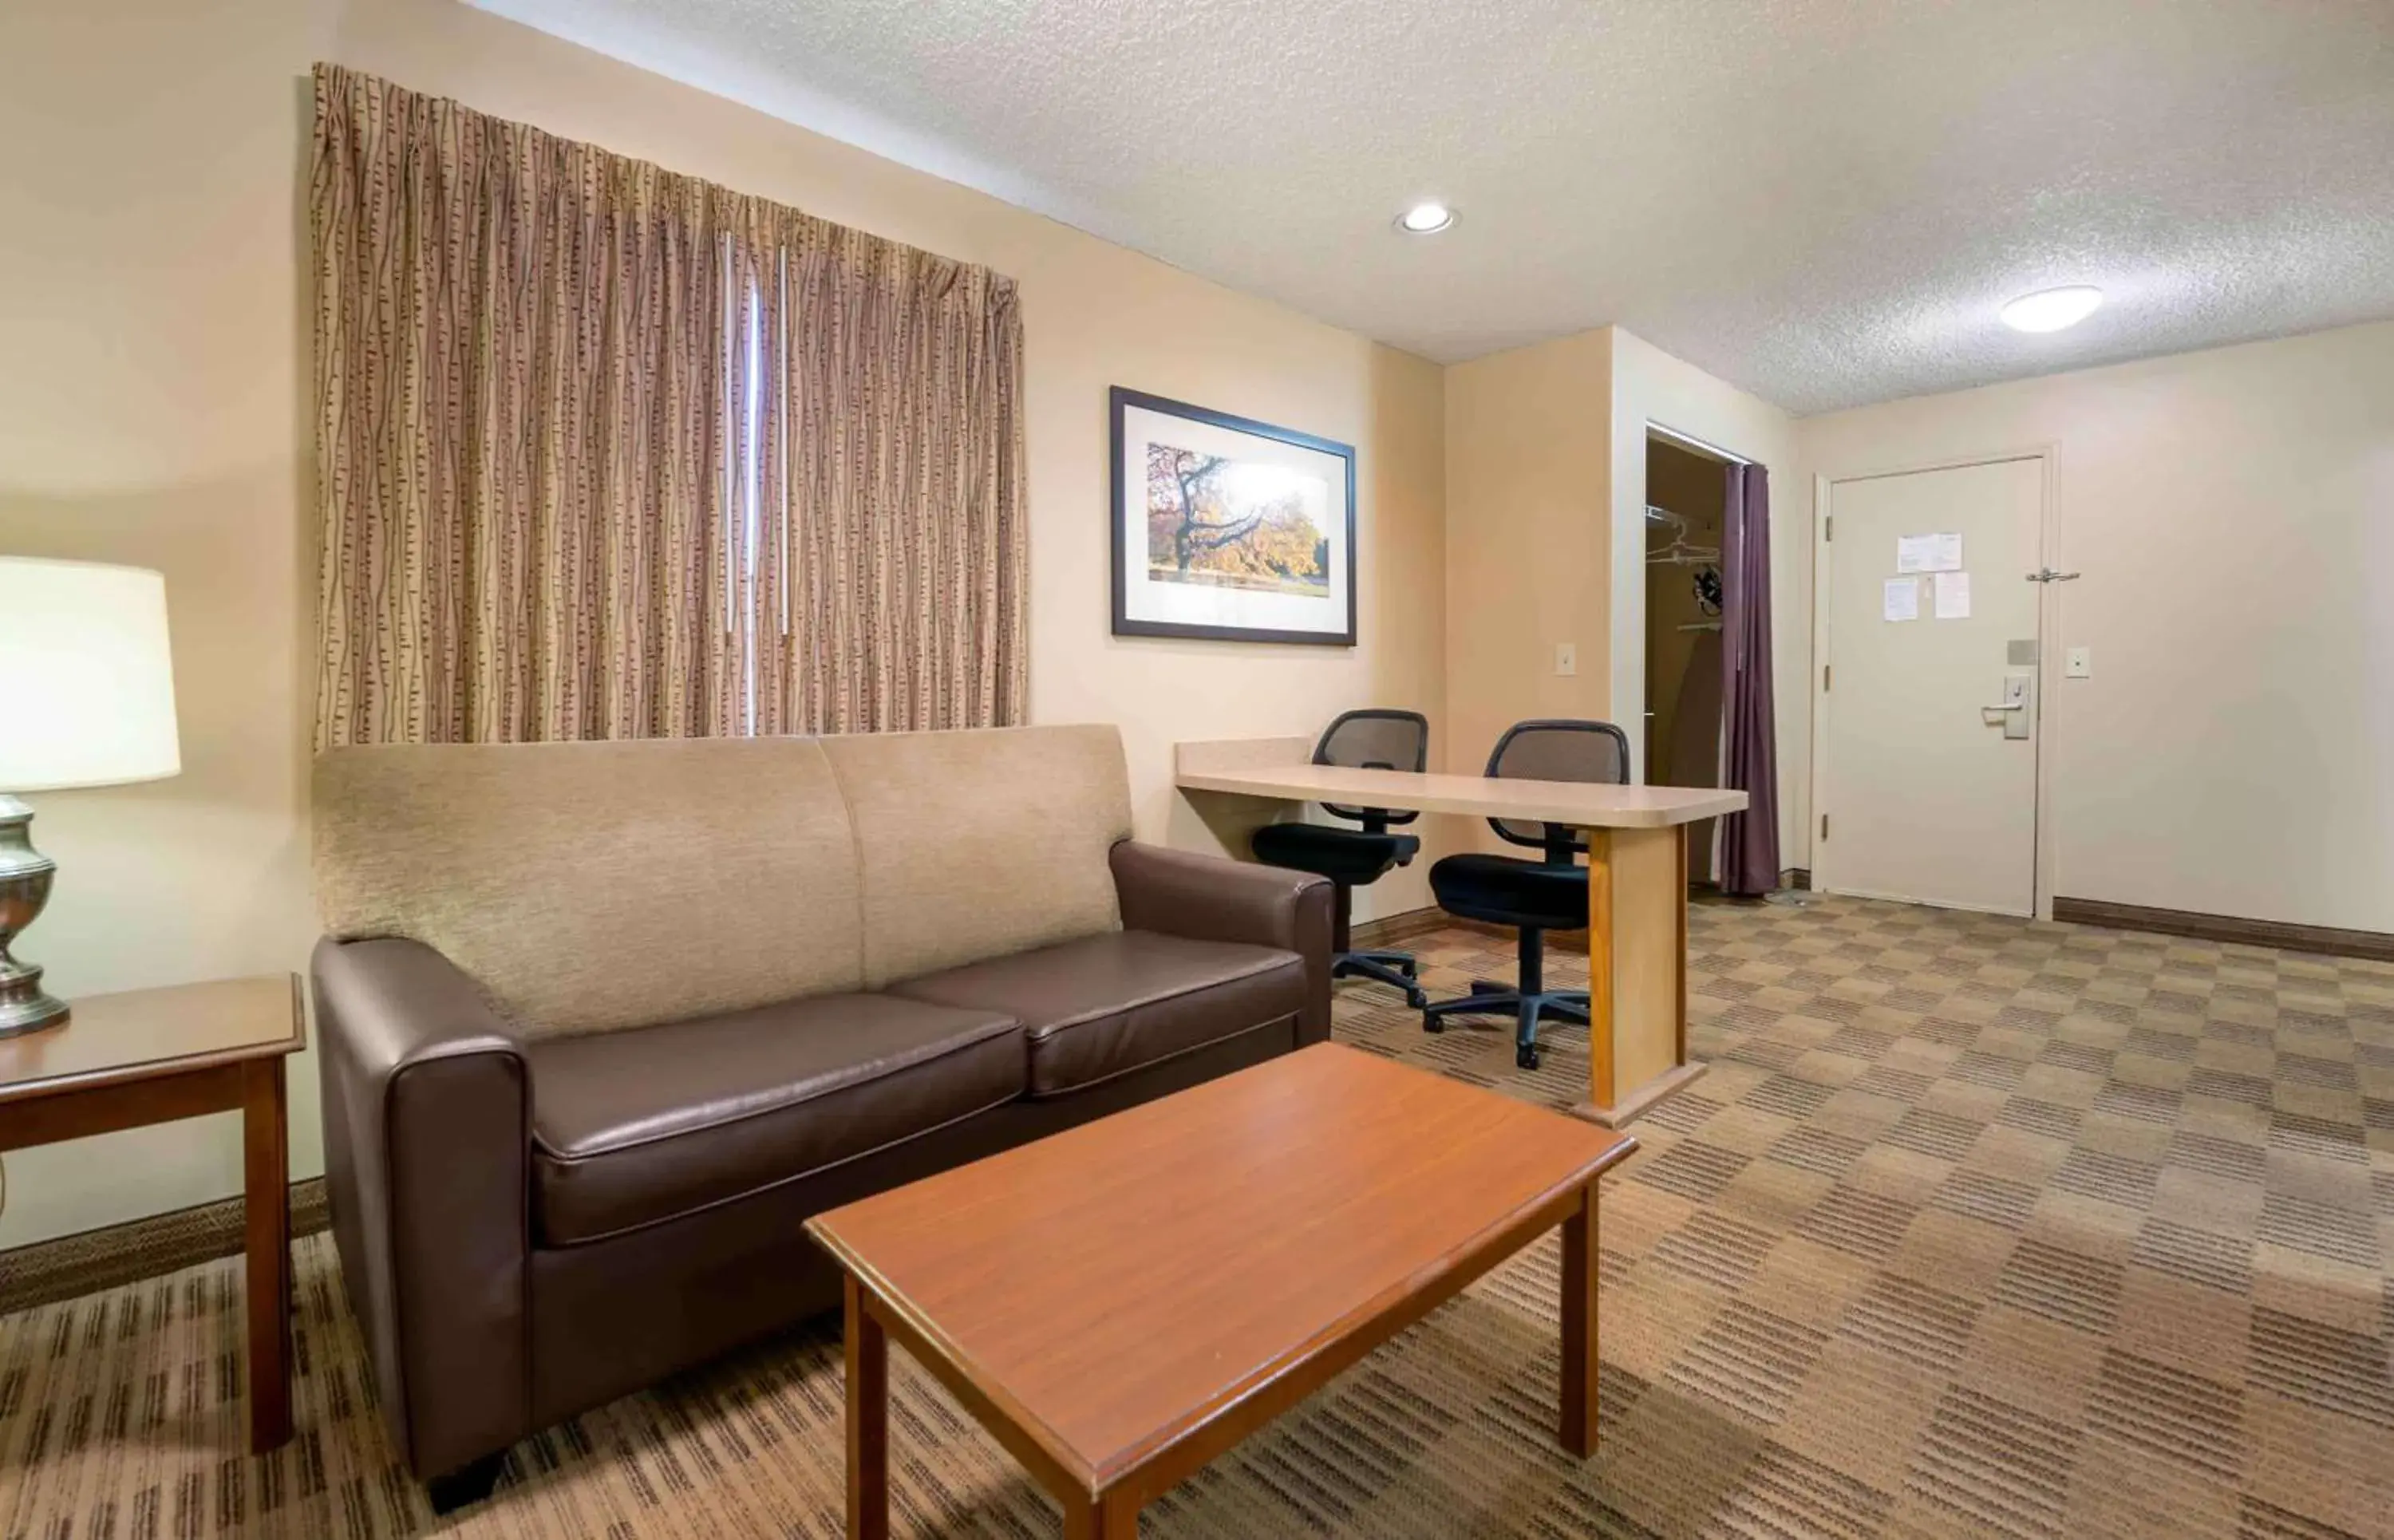 Bedroom, Seating Area in Extended Stay America Suites - Cincinnati - Blue Ash - Reagan Hwy